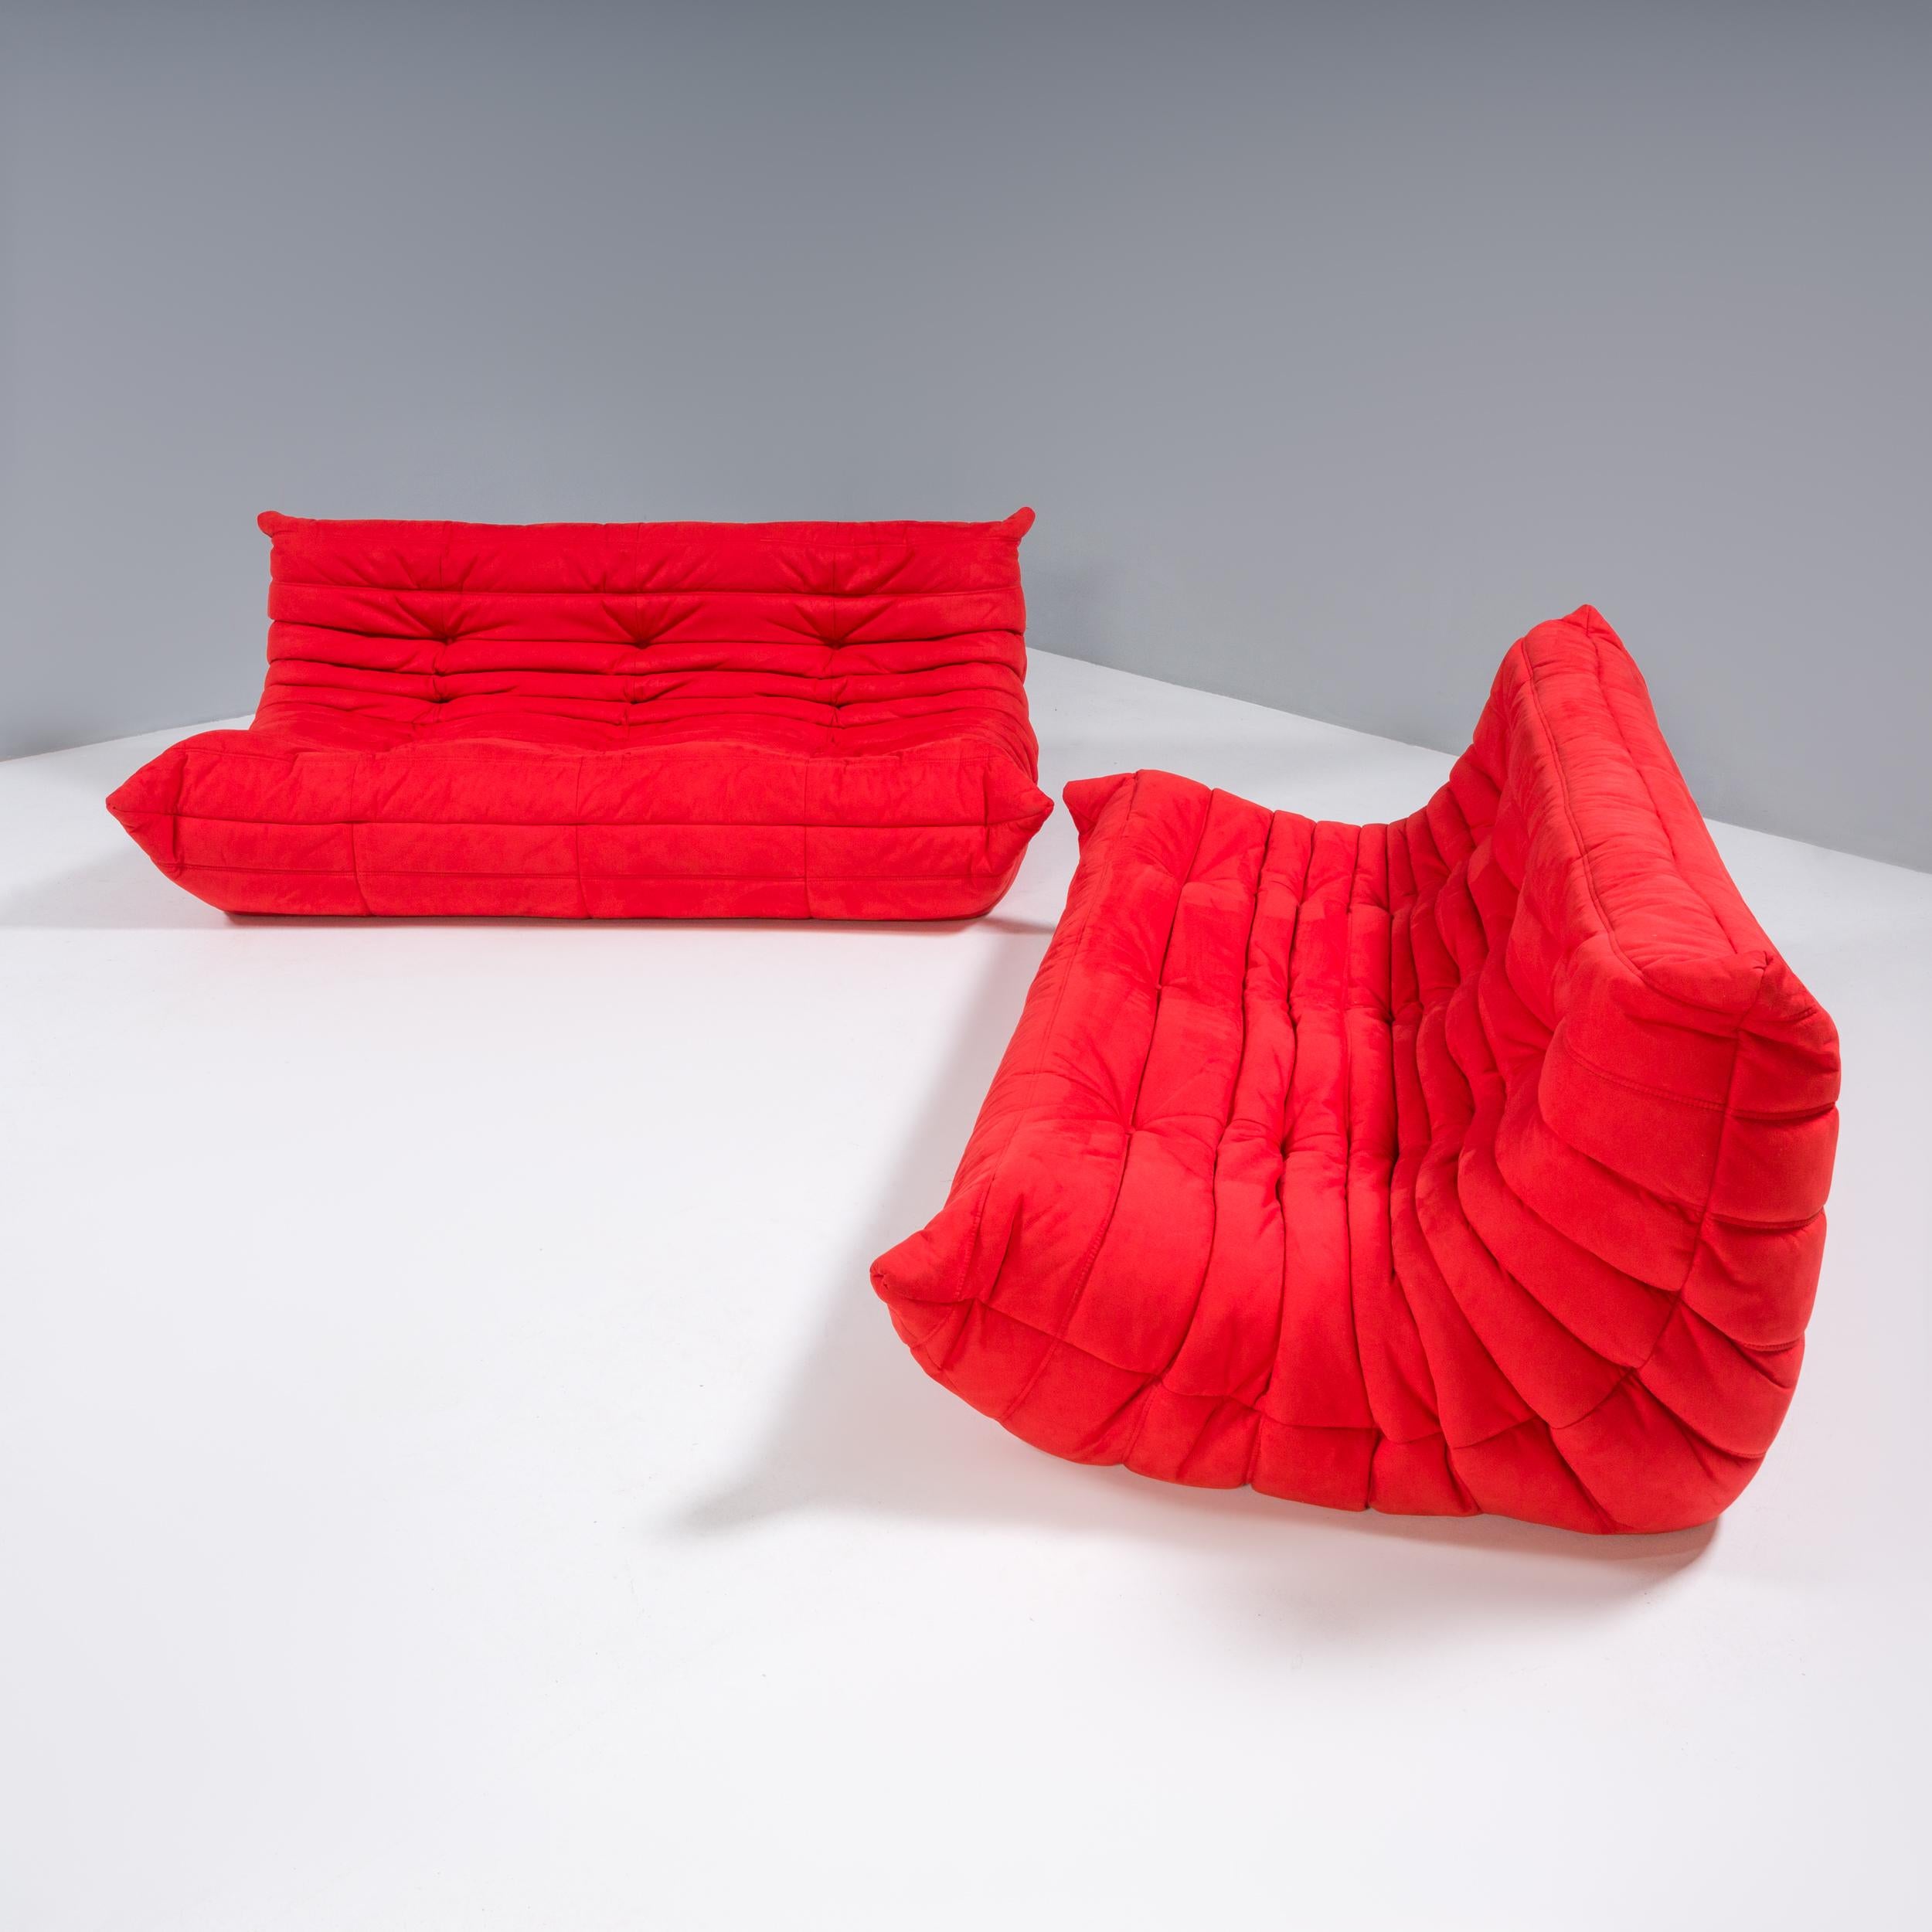 Das ikonische Sofa Togo, ursprünglich von Michel Ducaroy für Ligne Roset im Jahr 1973 entworfen, ist zu einem Designklassiker geworden.

Dieses zweiteilige Set kann zu einem großen Sofa konfiguriert oder als zwei separate Sofas verwendet